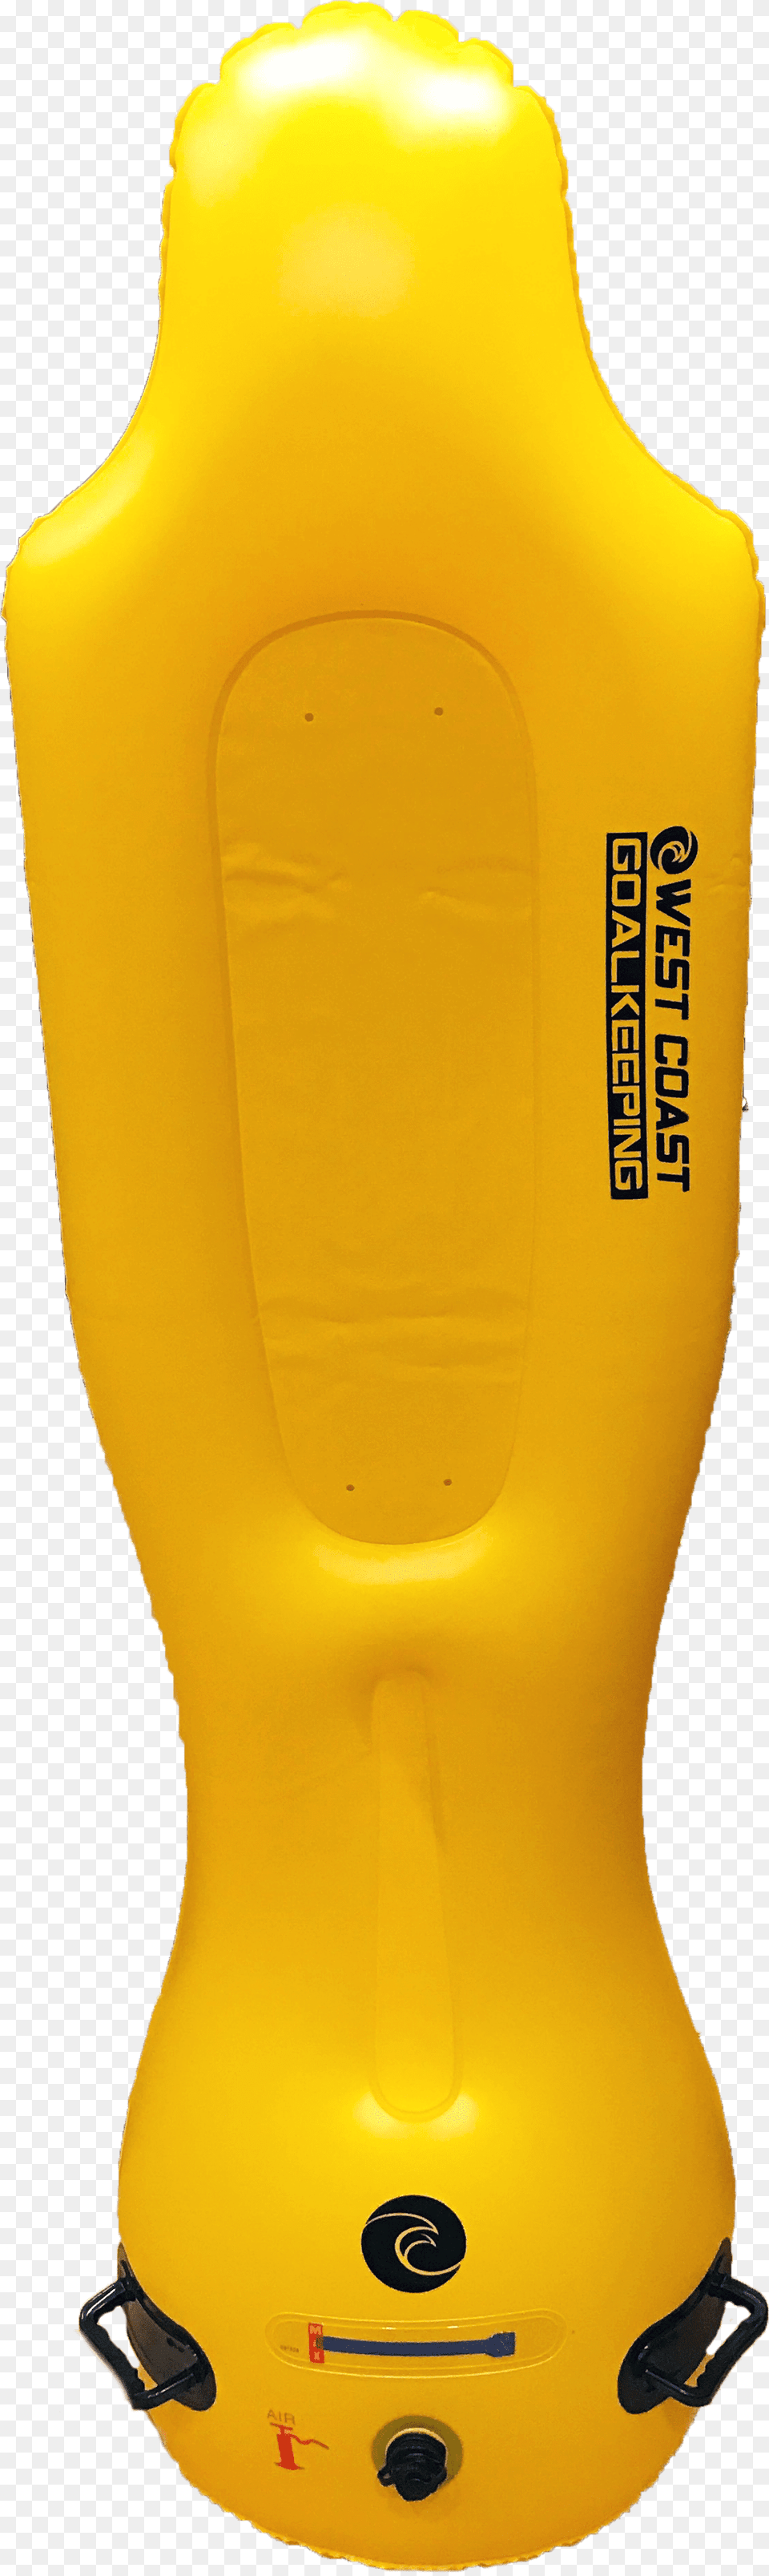 Inflatable Training Dummy Training Goalkeeper Equipment, Clothing, Lifejacket, Vest Png Image